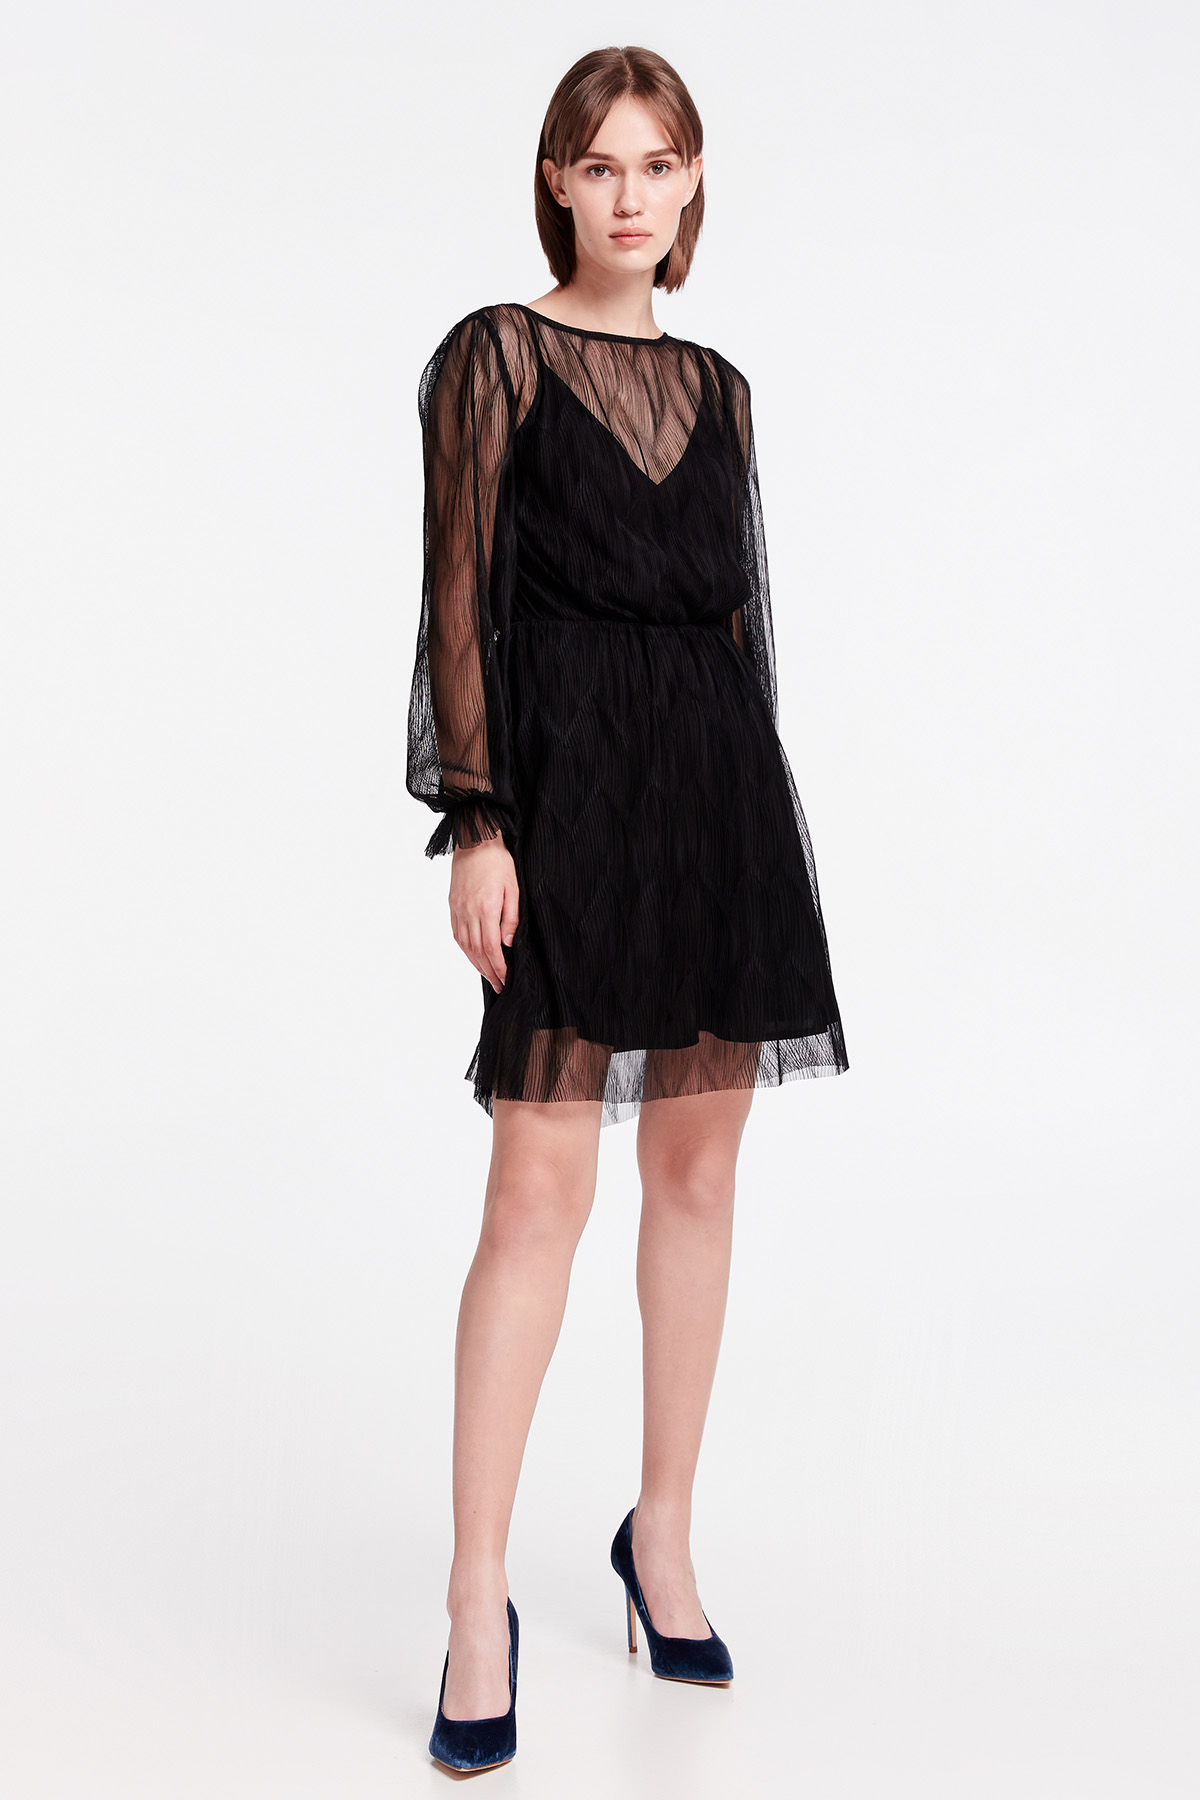 Black lace mini dress, photo 1